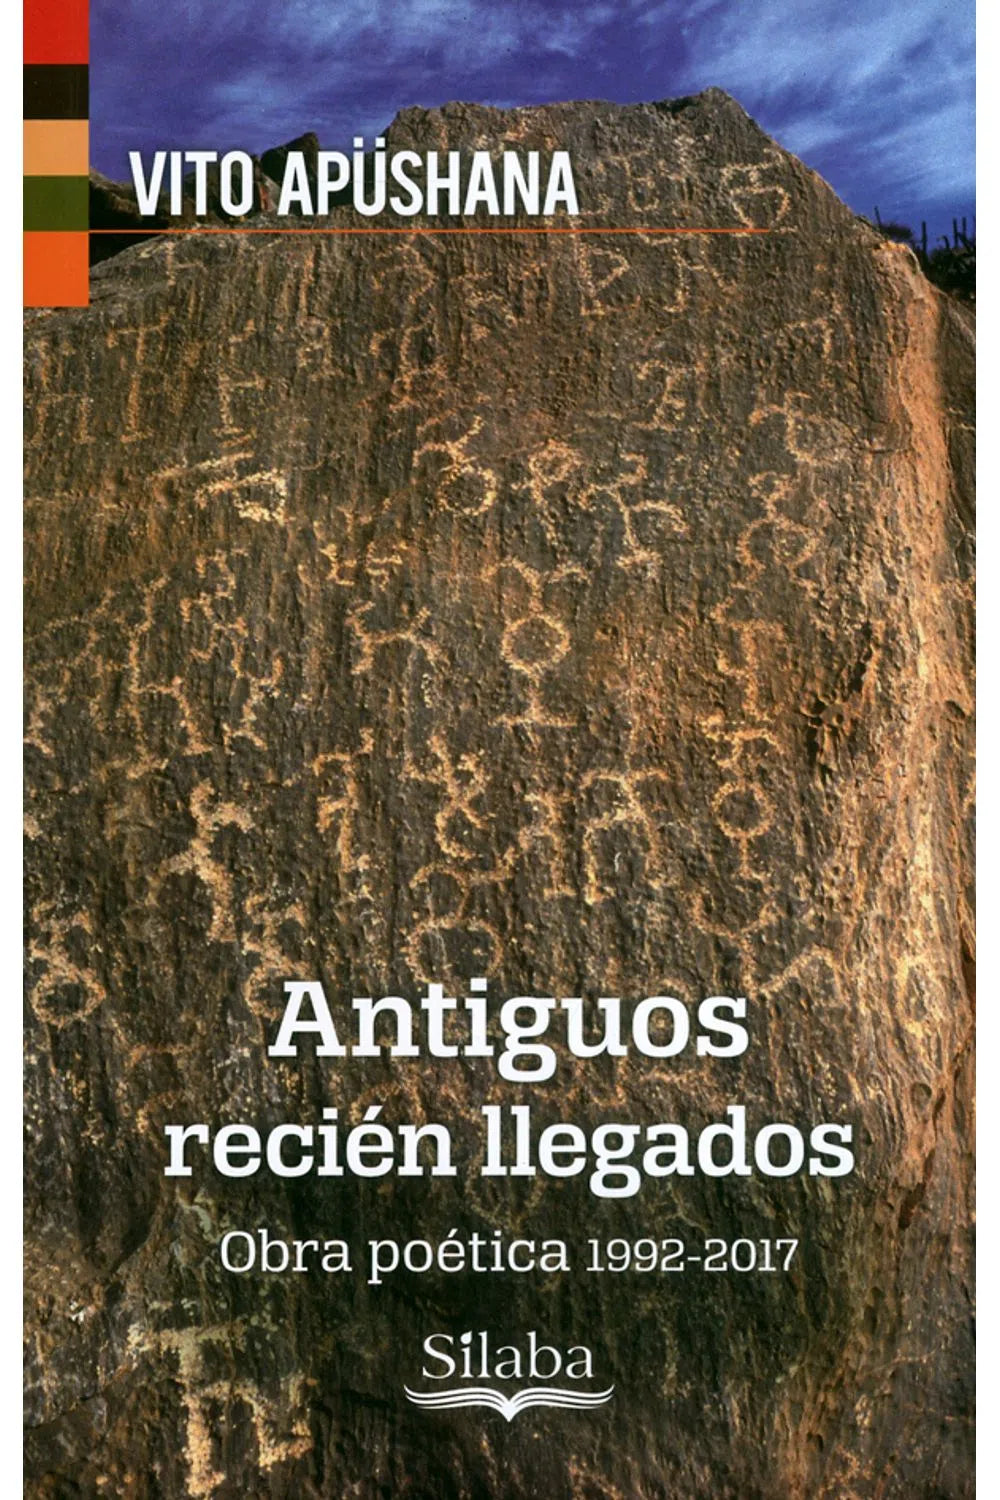 Antiguos recién llegados. Obra poética 1992-2017 - Vito Apüshana